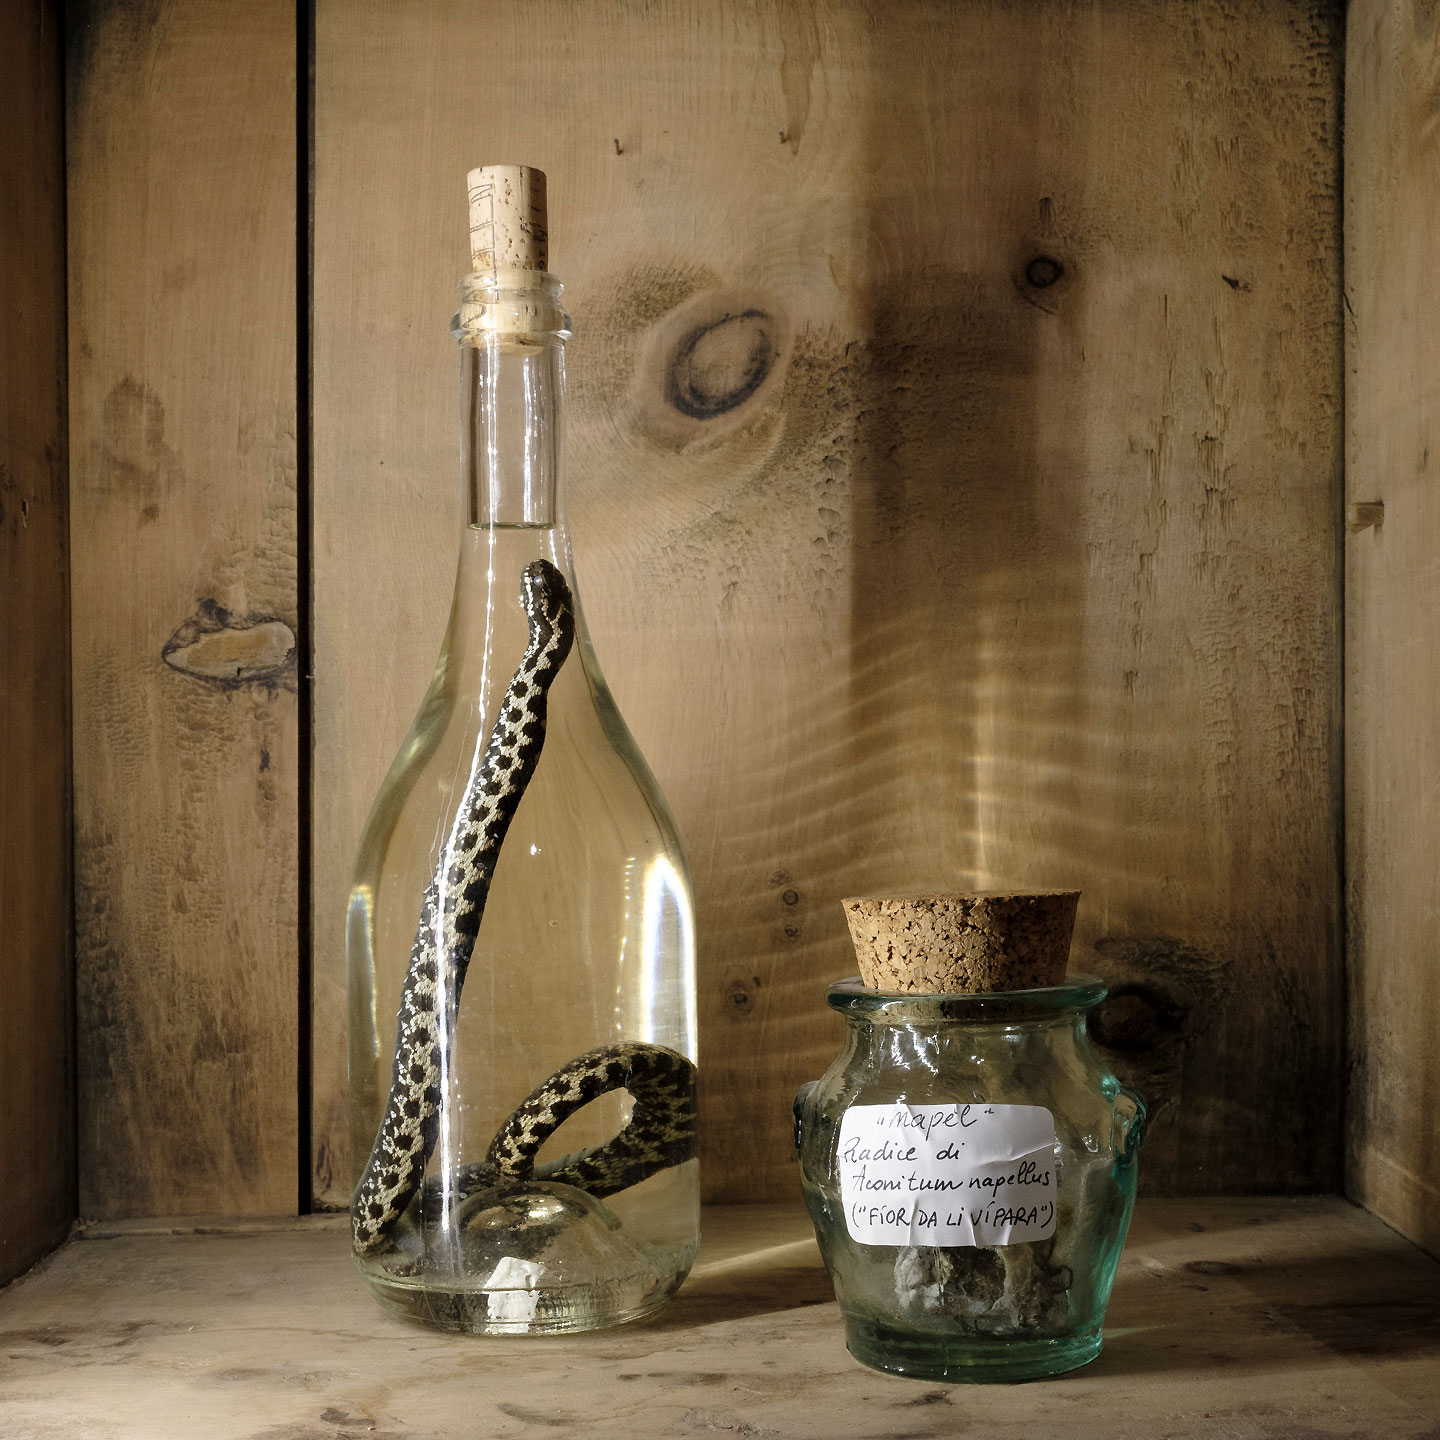 Un esemplare di vipera berus immersa in alcool etilico. Spesso erbe e bacche velenose riportano i nomi dialettali che richiamano la vipera e il suo veleno.